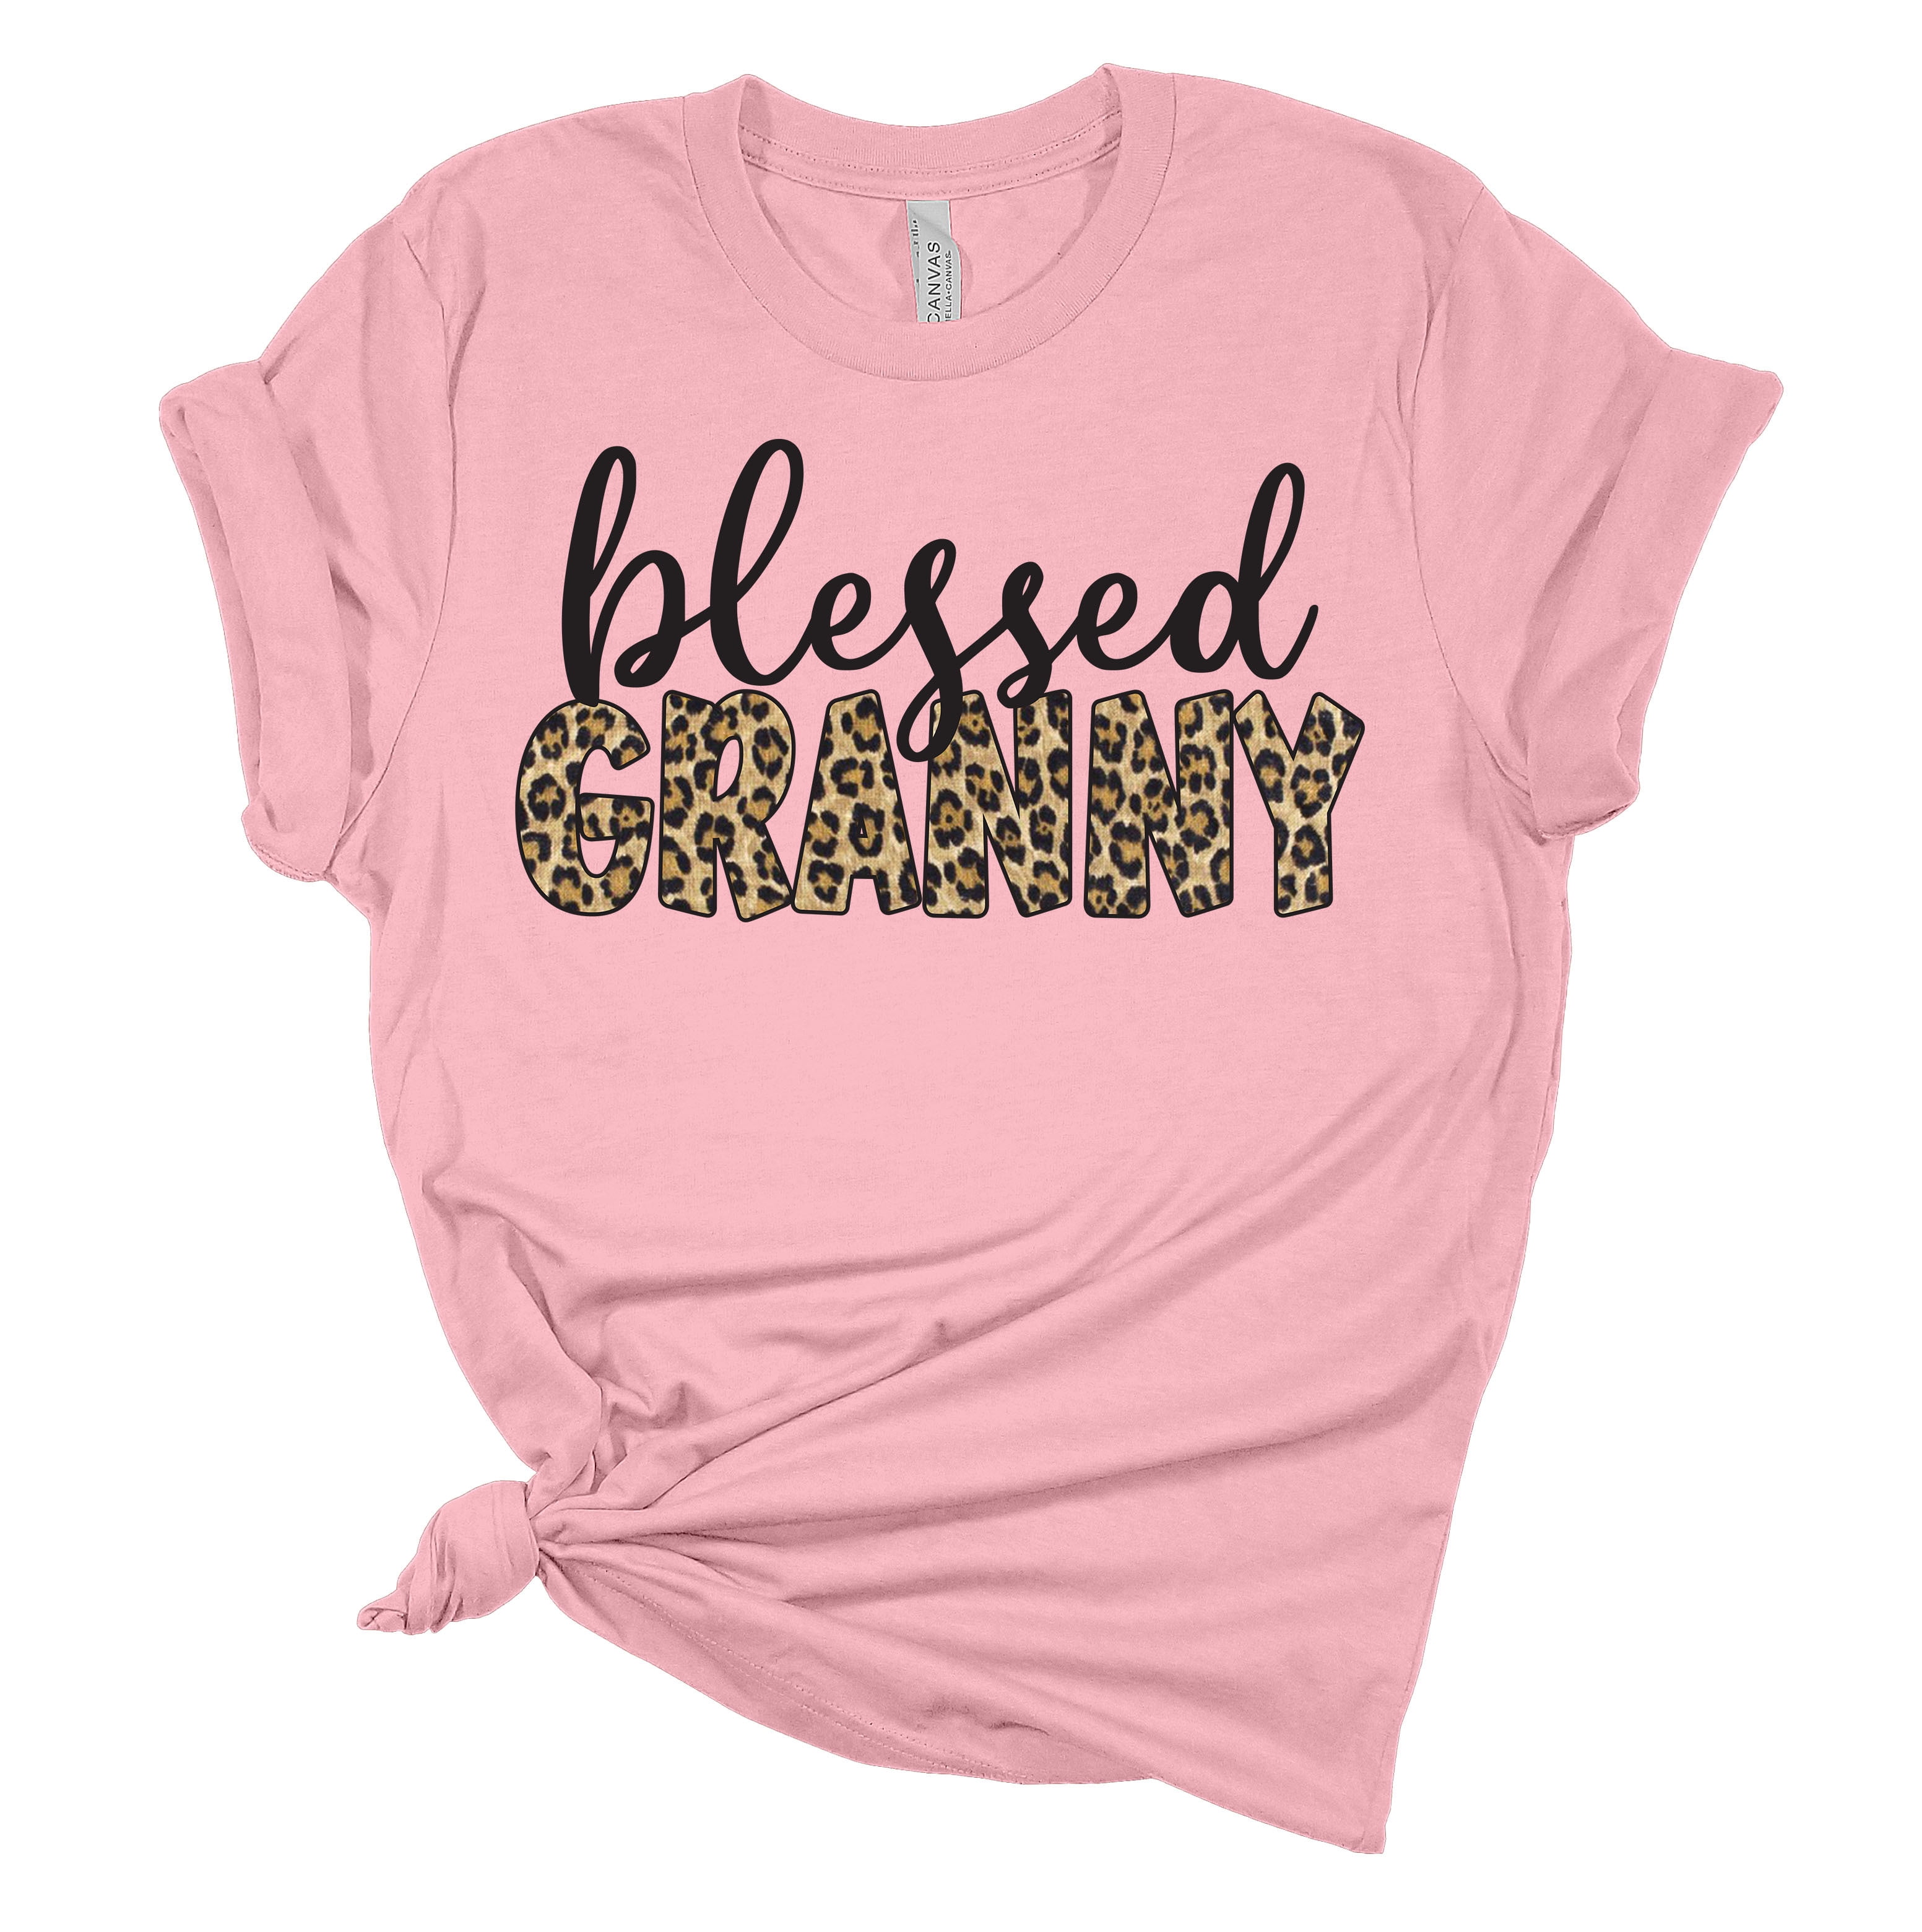 Yaya Gift Gift for Her Comfy Shirt Yaya Shirt Grandma Gift Baby Reveal Shirt Grandma Shirt Soft Shirt Blessed Yaya Blessed Shirt